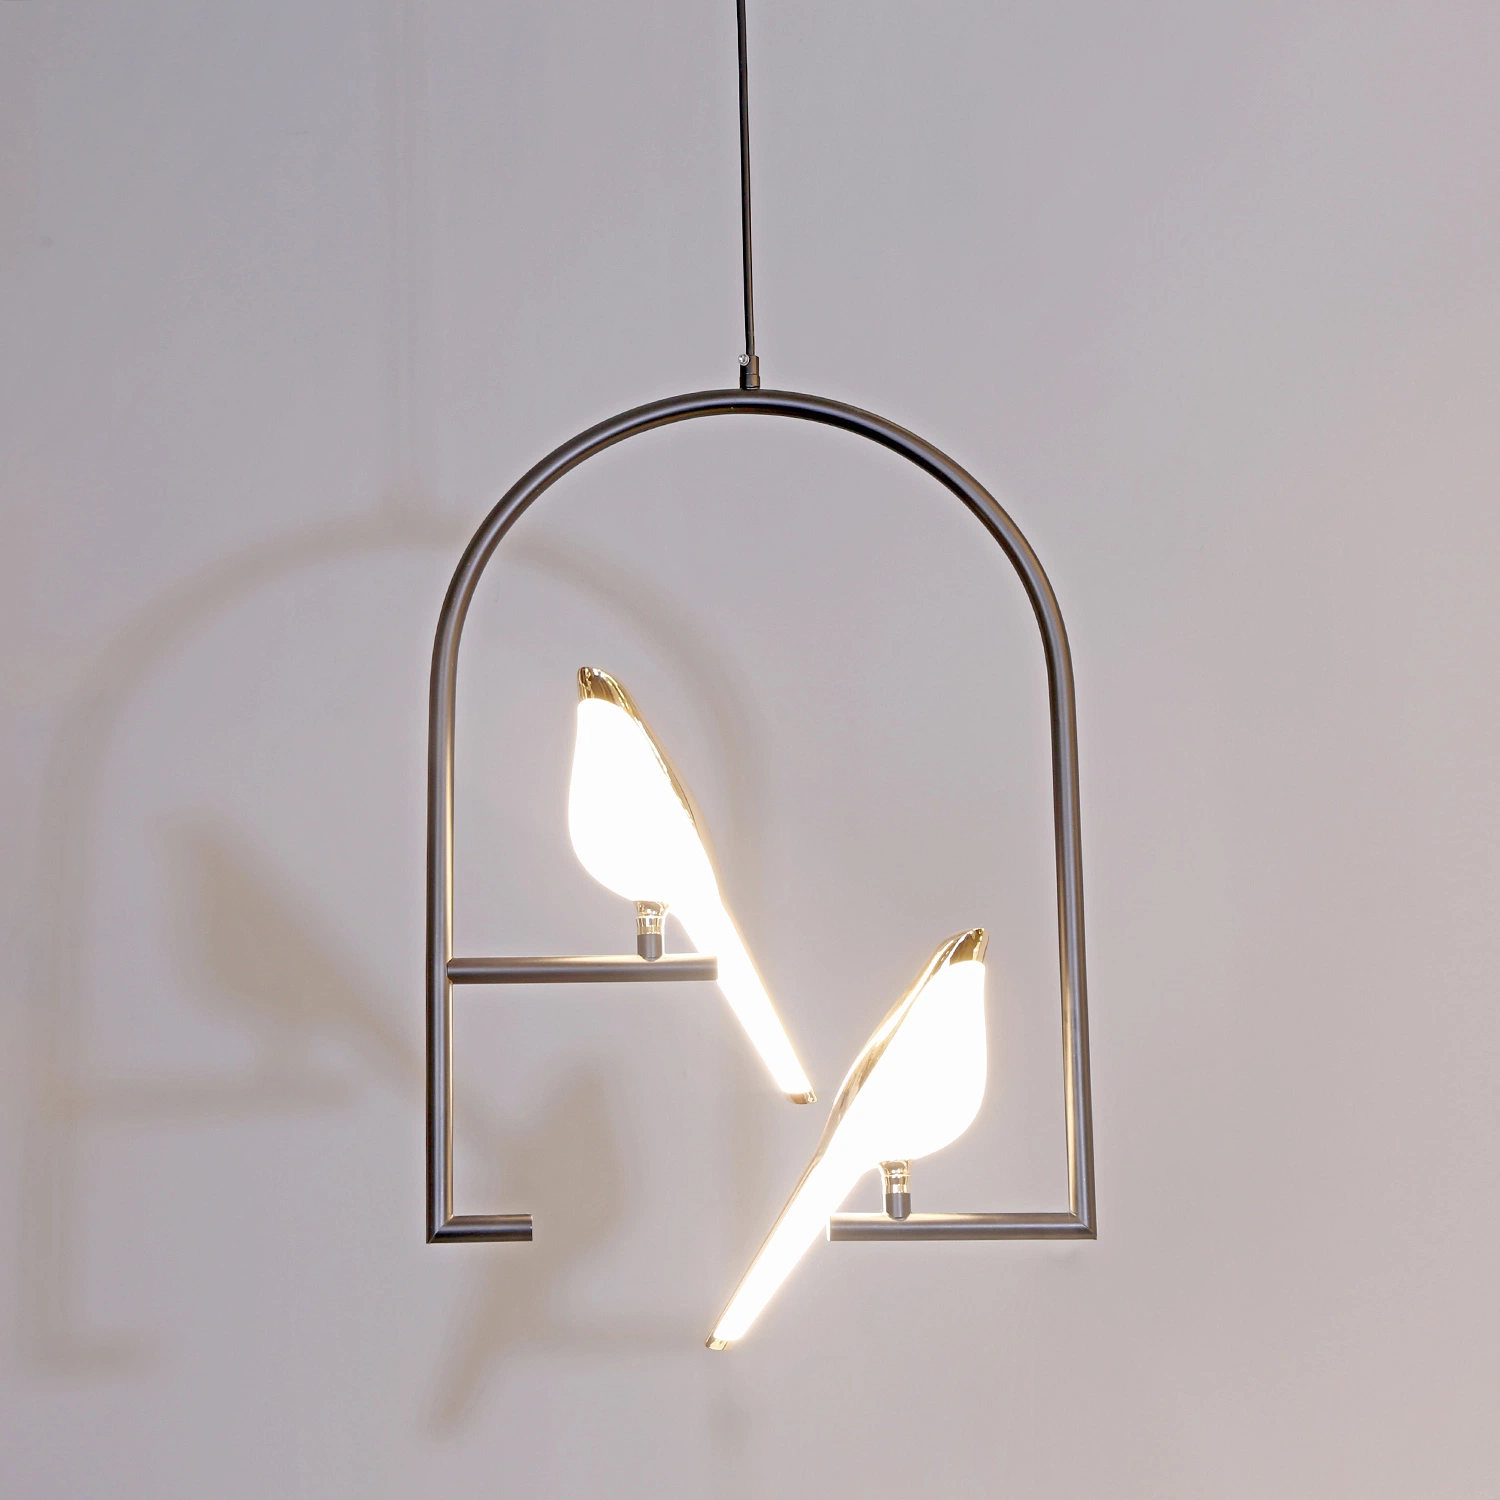 LED الديكور المنزلي الفاتح تصميم بيرد ستاج العيش إضاءة حديثة مصباح مدلاة